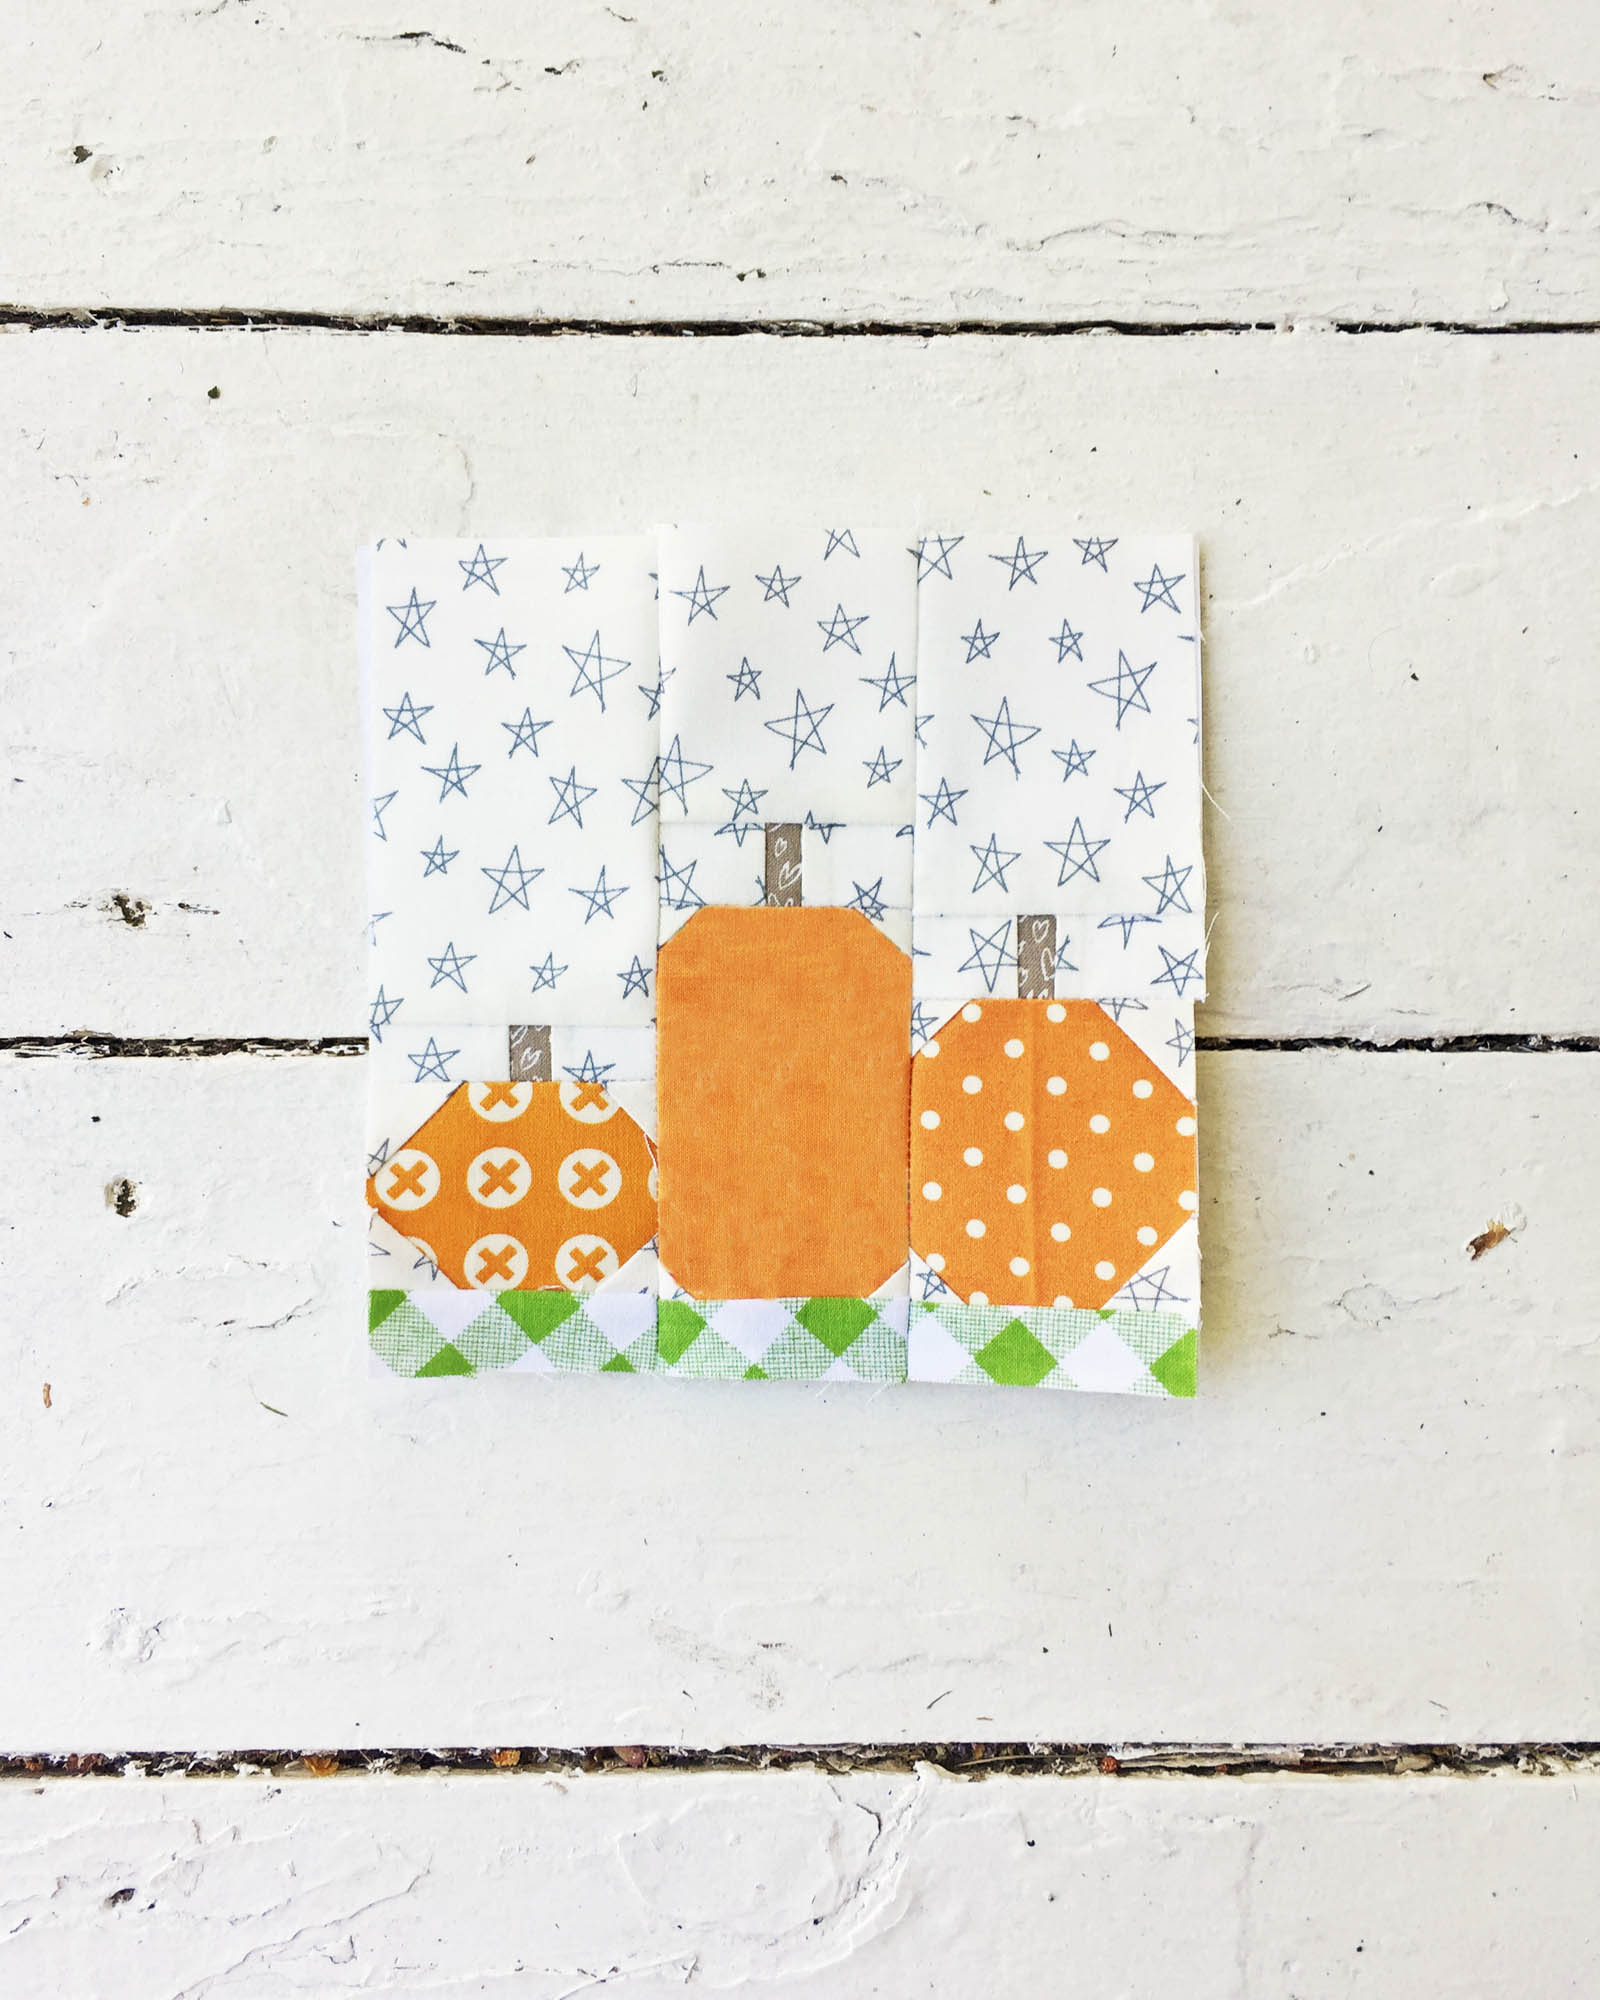 foundation paper piecing: fall pumpkin pillow